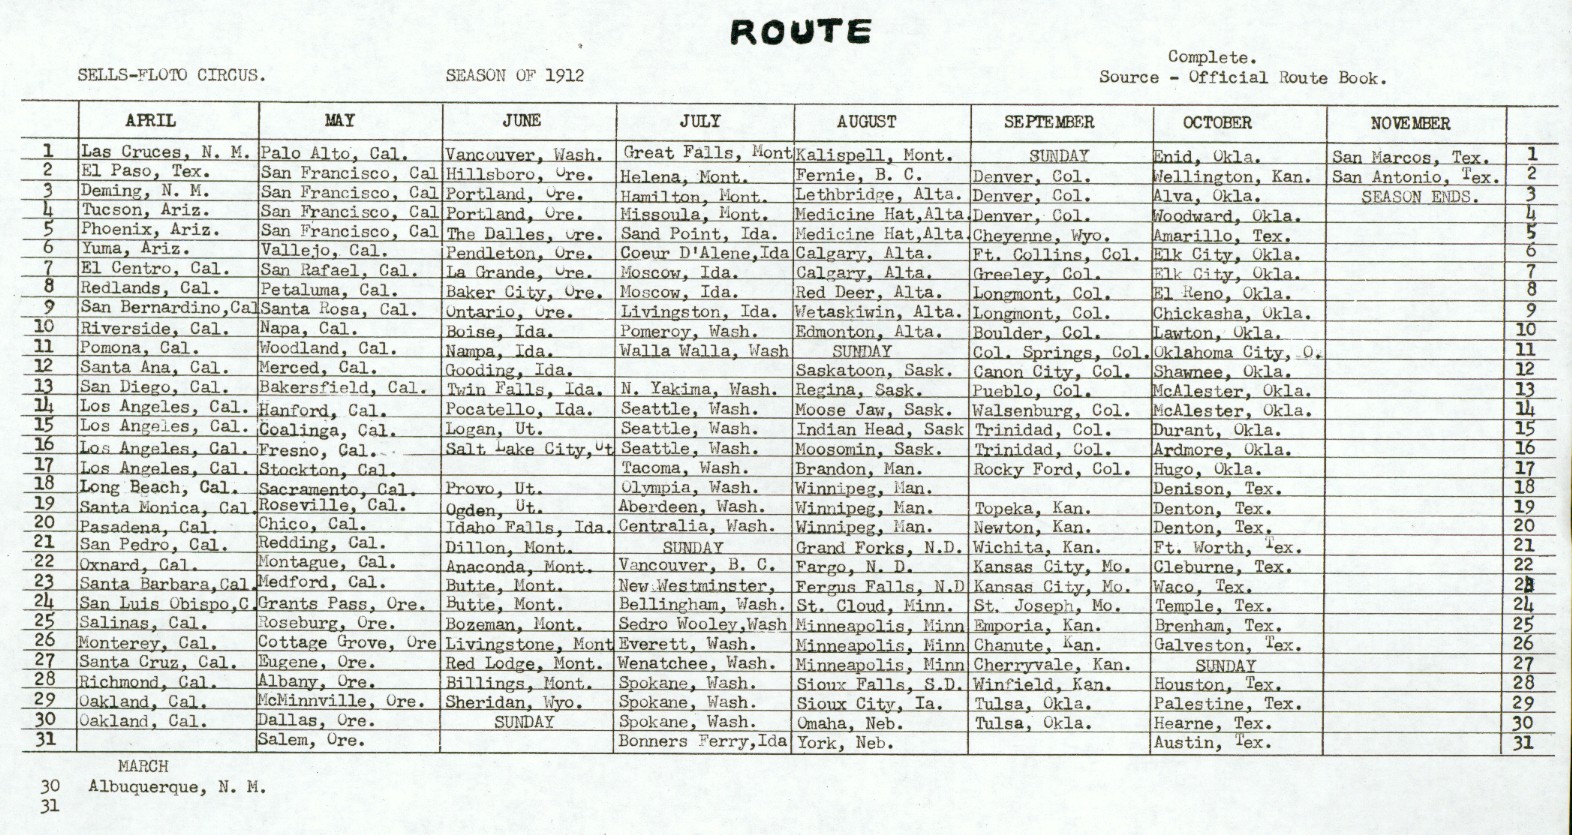 1912 Season Route, Sells-Floto Circus